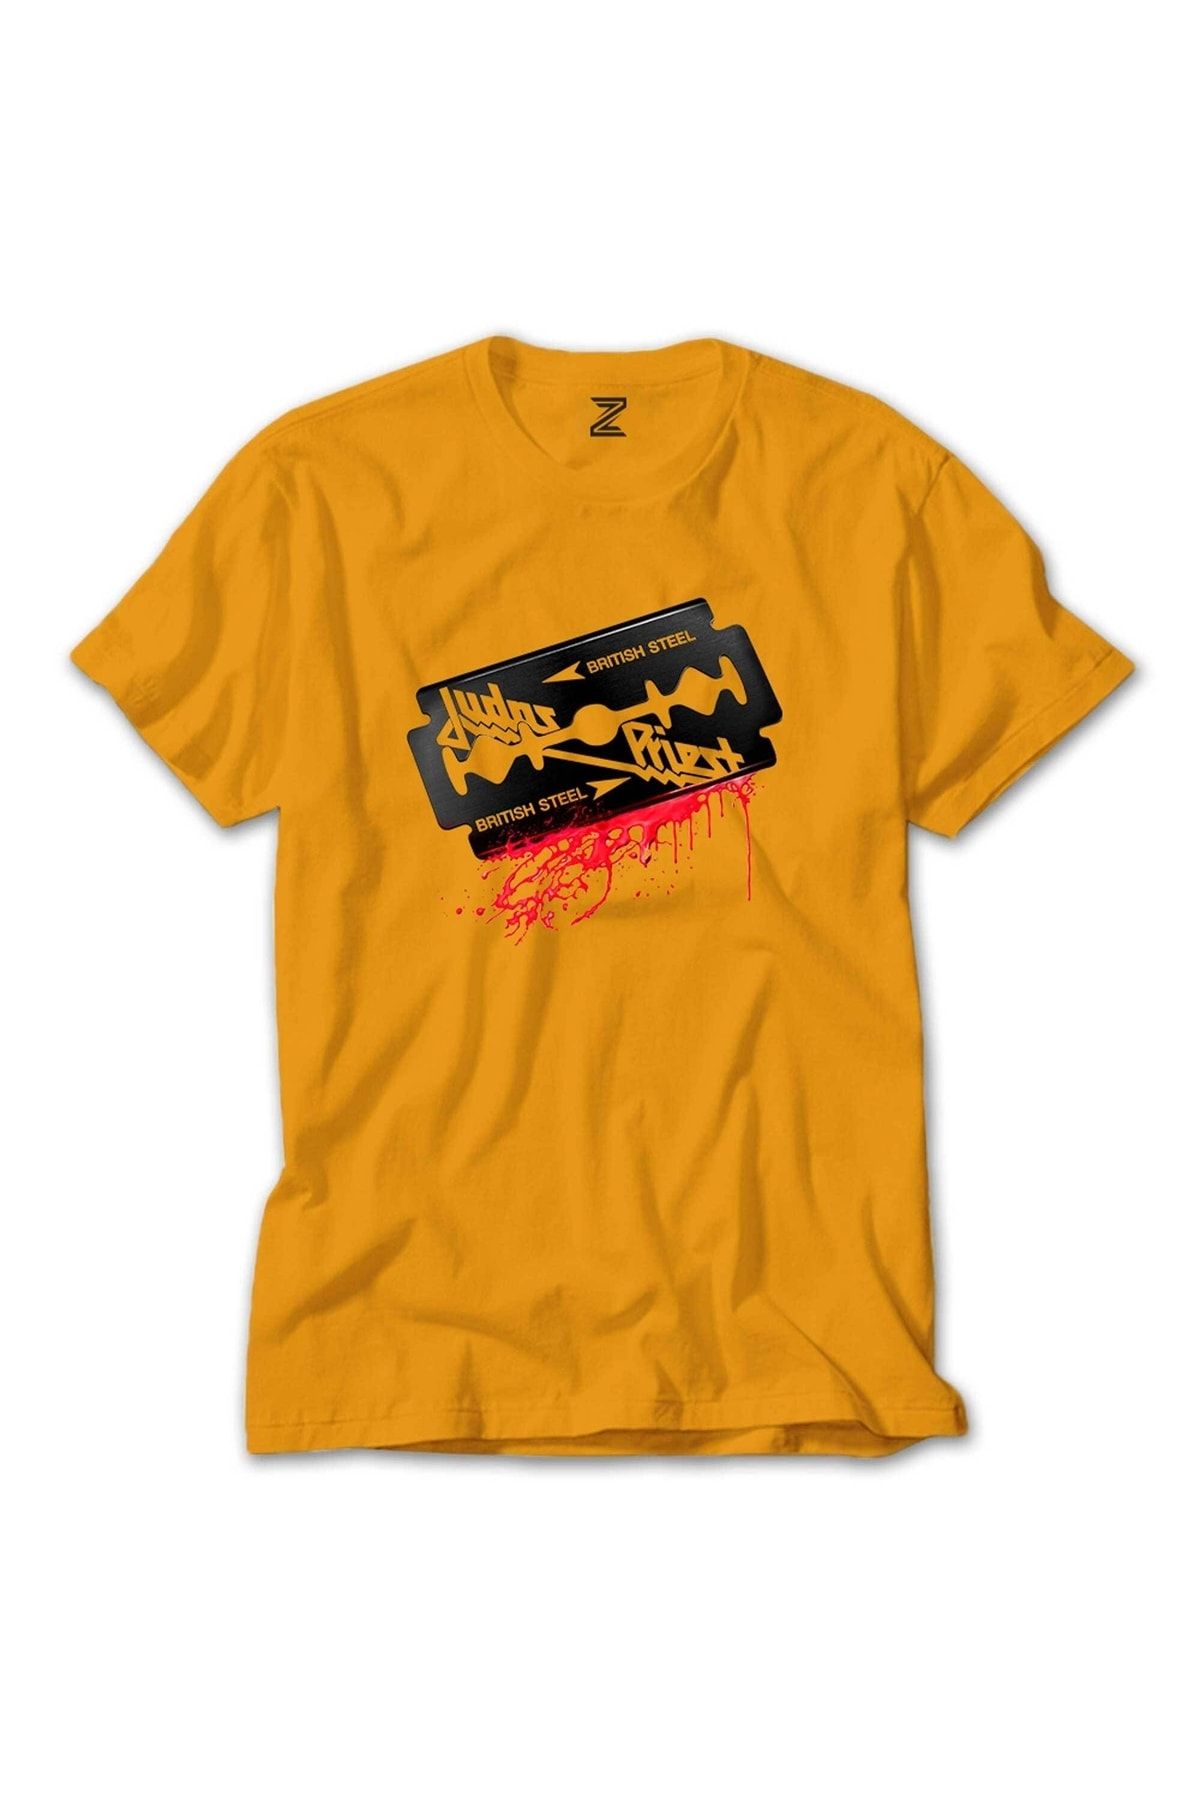 Z zepplin Judas Priest Steel Sarı Tişört